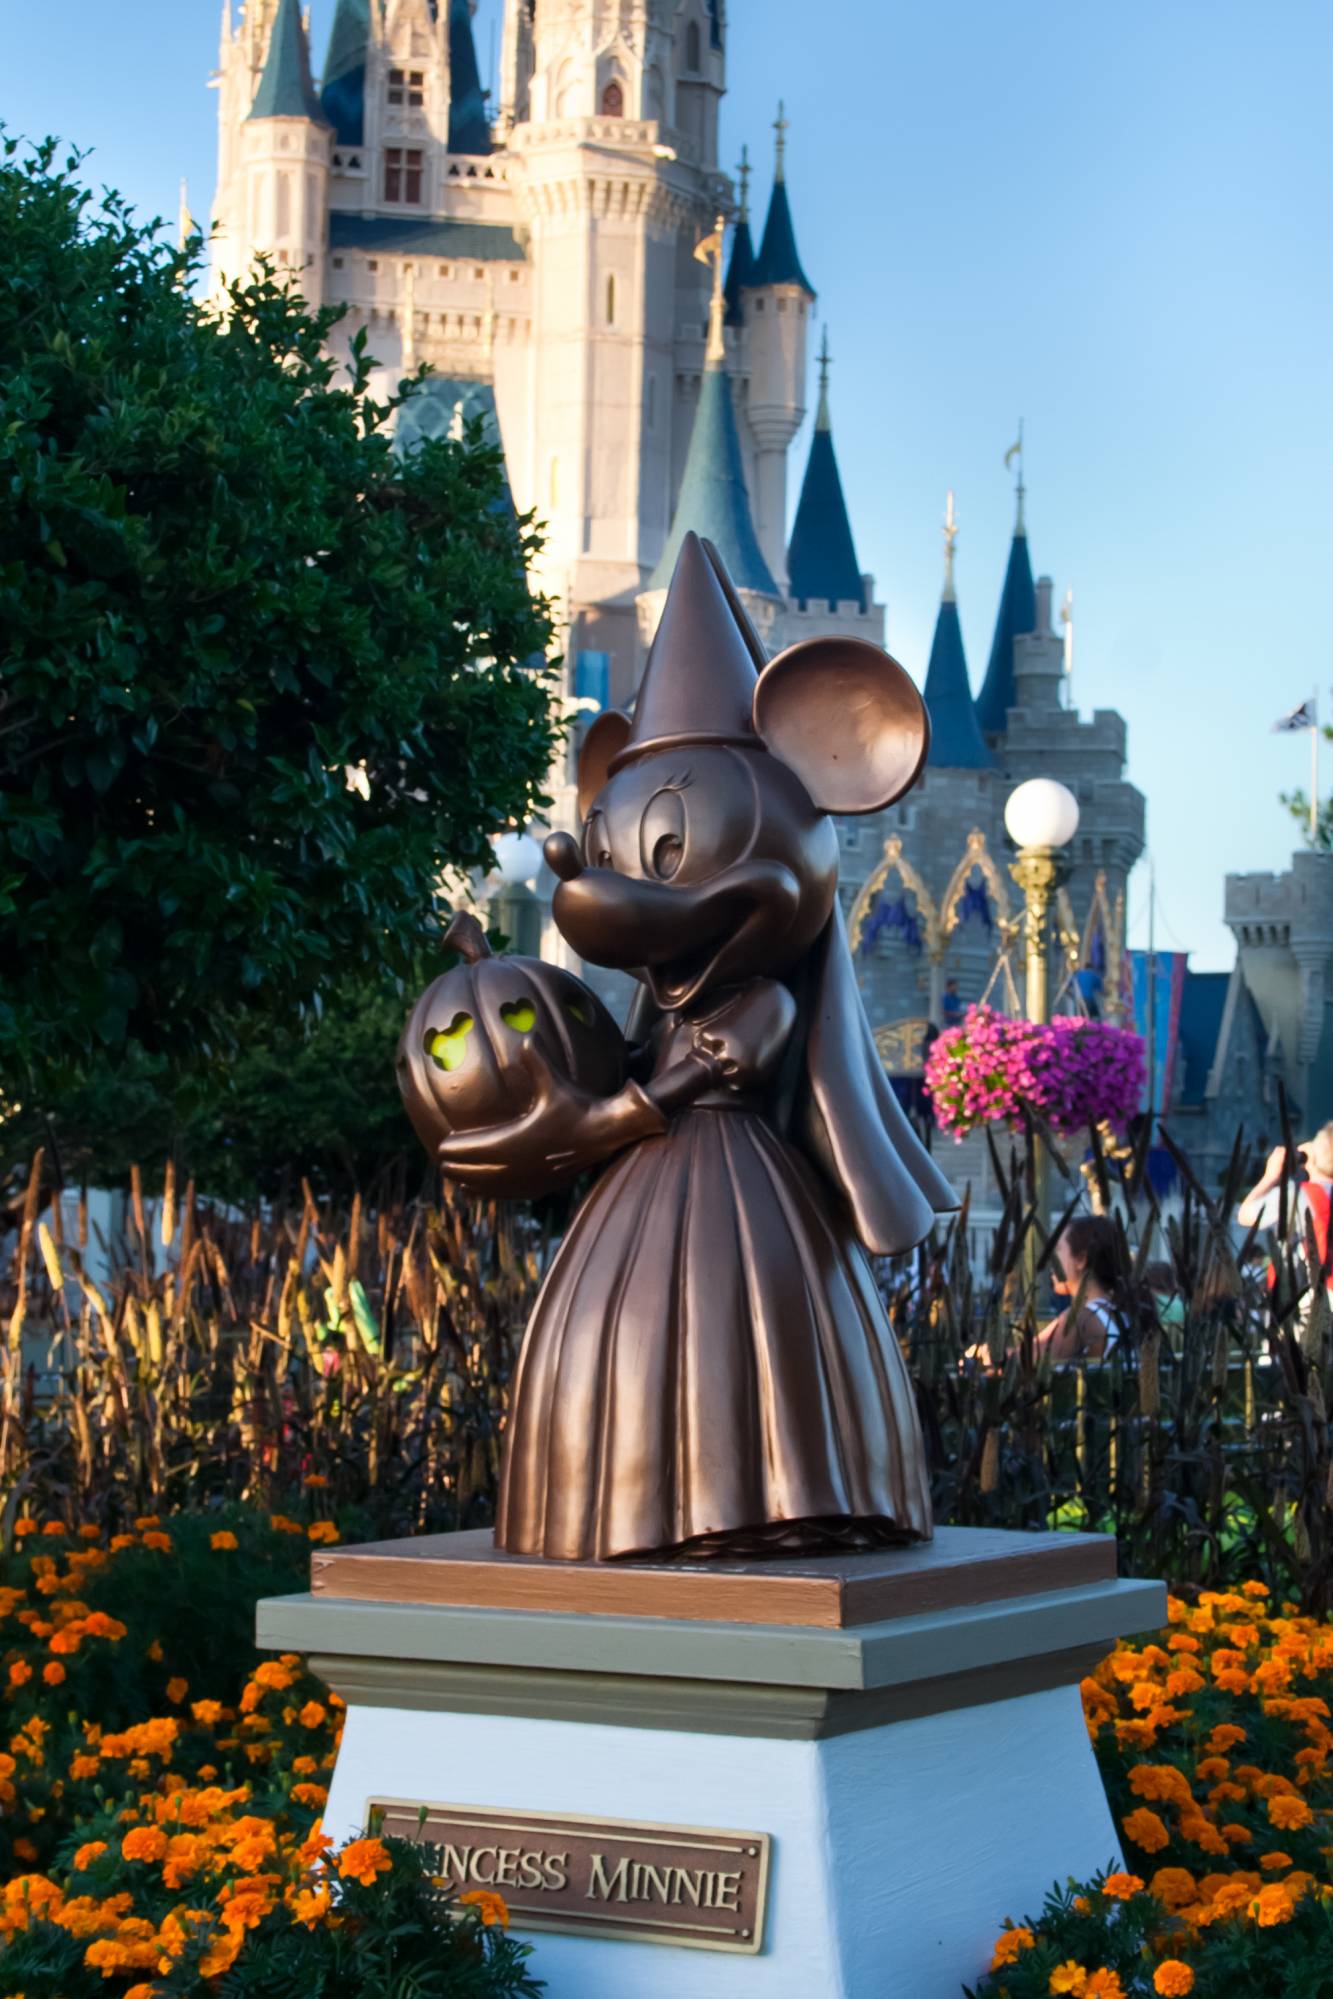 Princess Minnie Statue